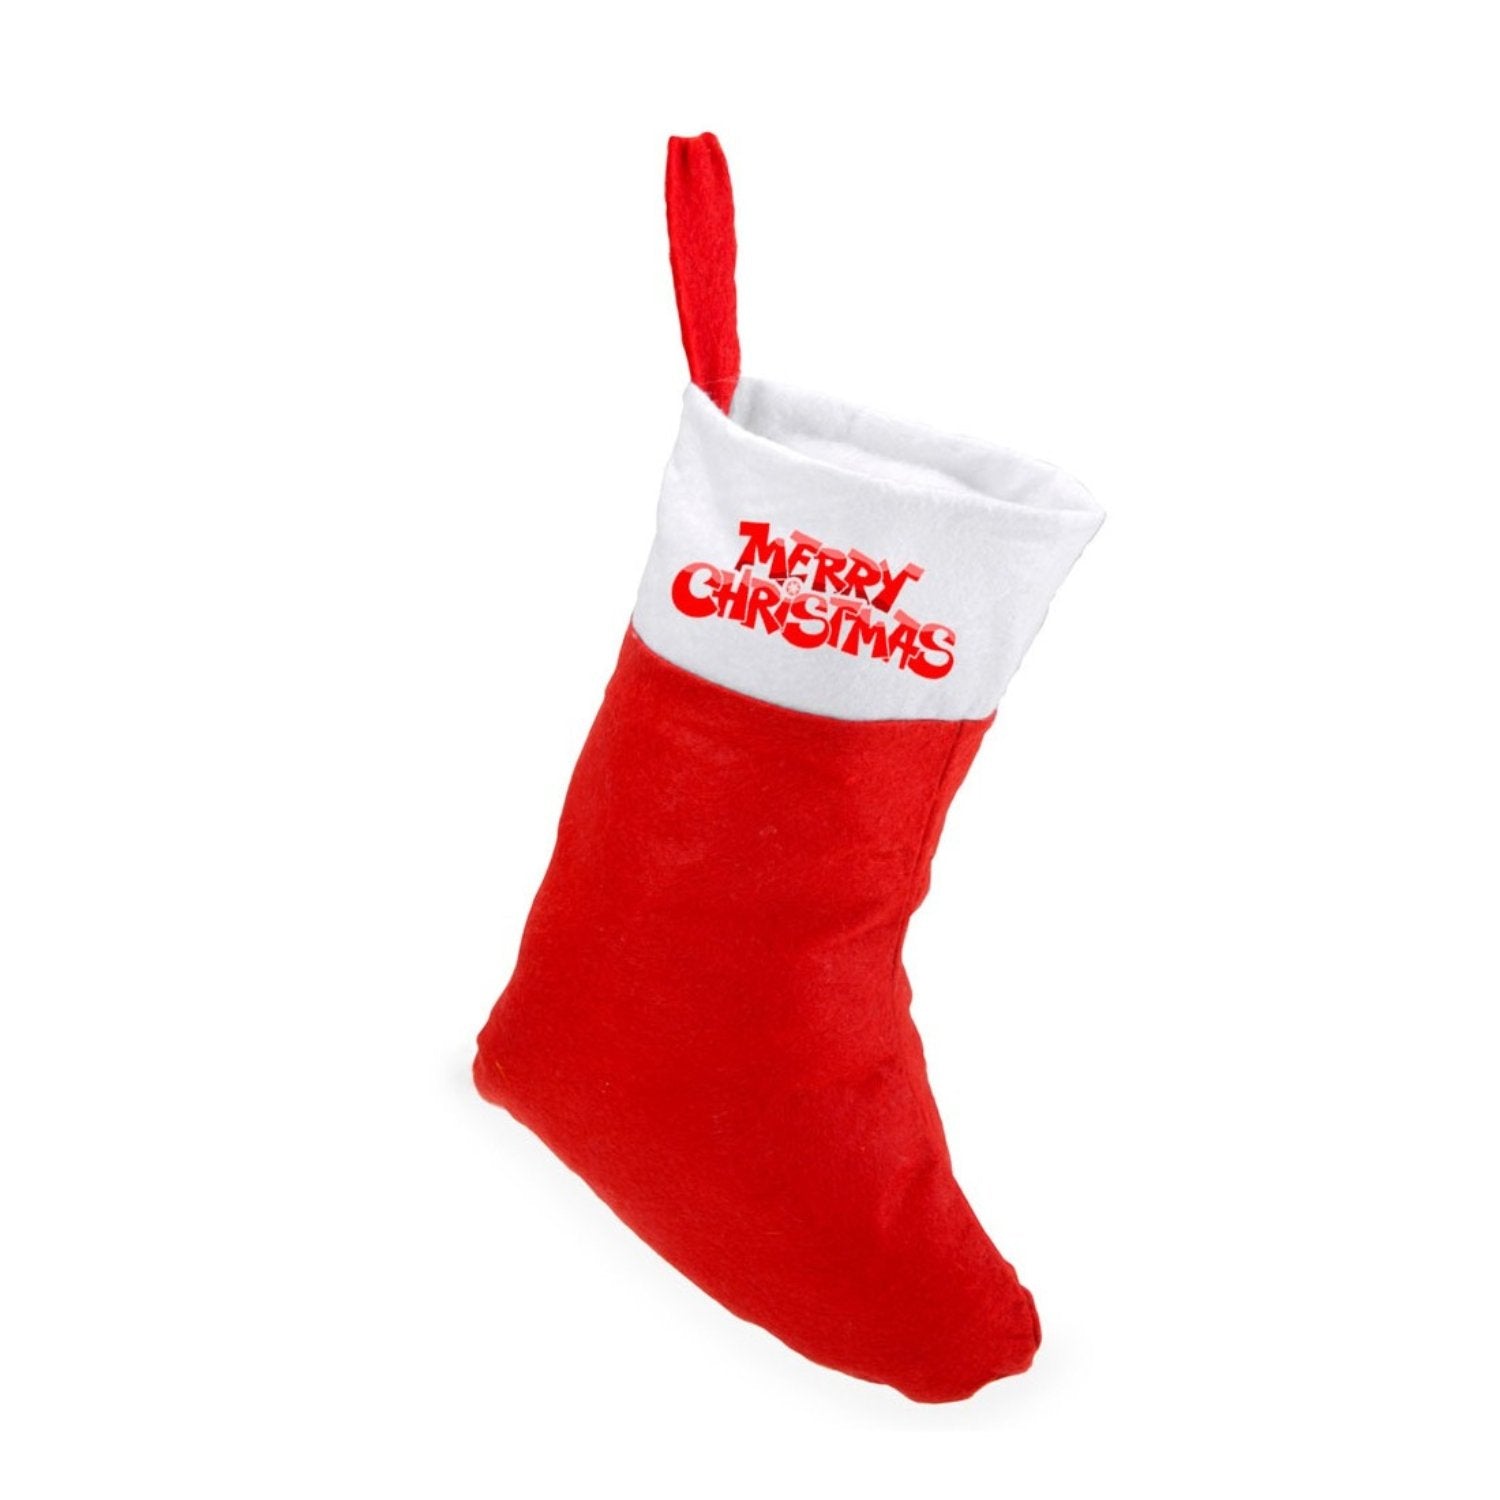 Ciorap de Crăciun personalizat - Cadouri Personalizate